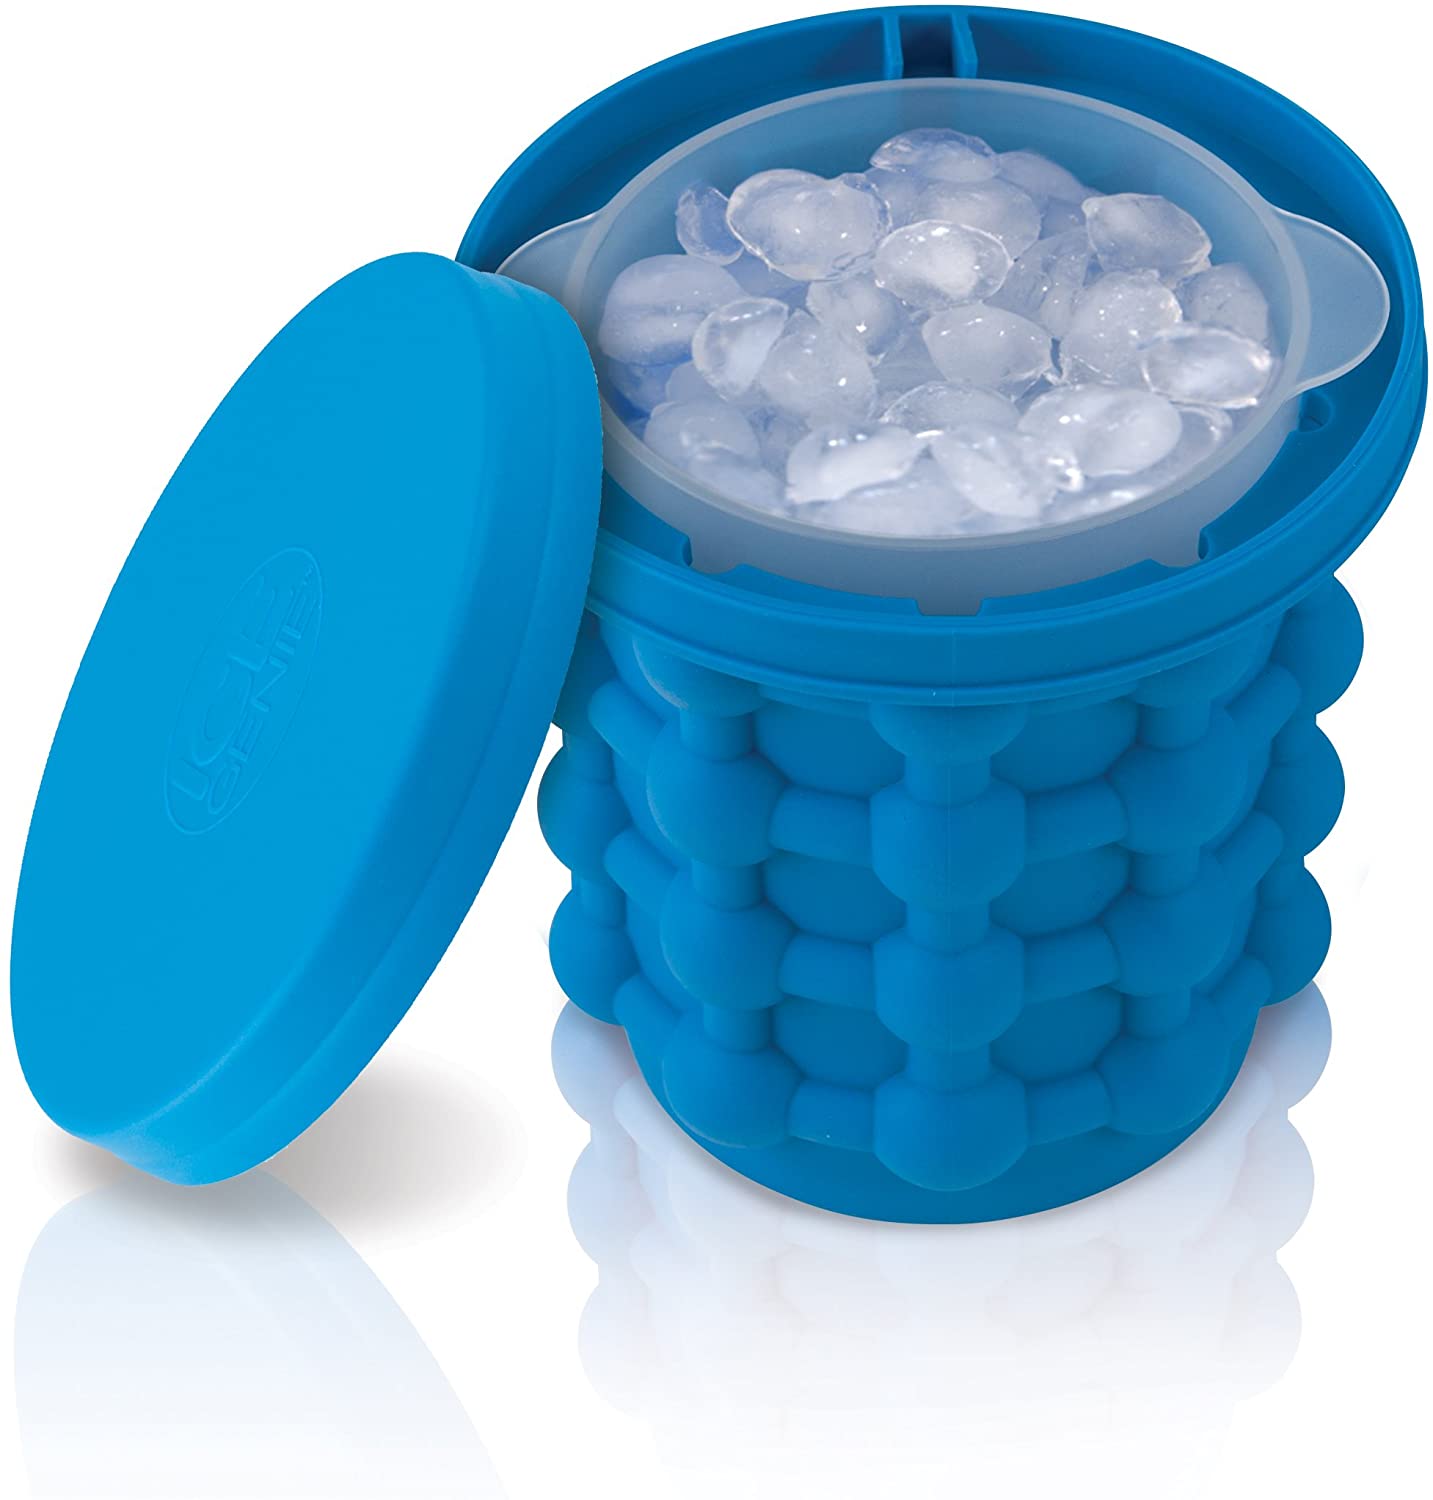 Silicone Ice Genie Cube Maker, 250 GM Blue Standard Silicon Rubber